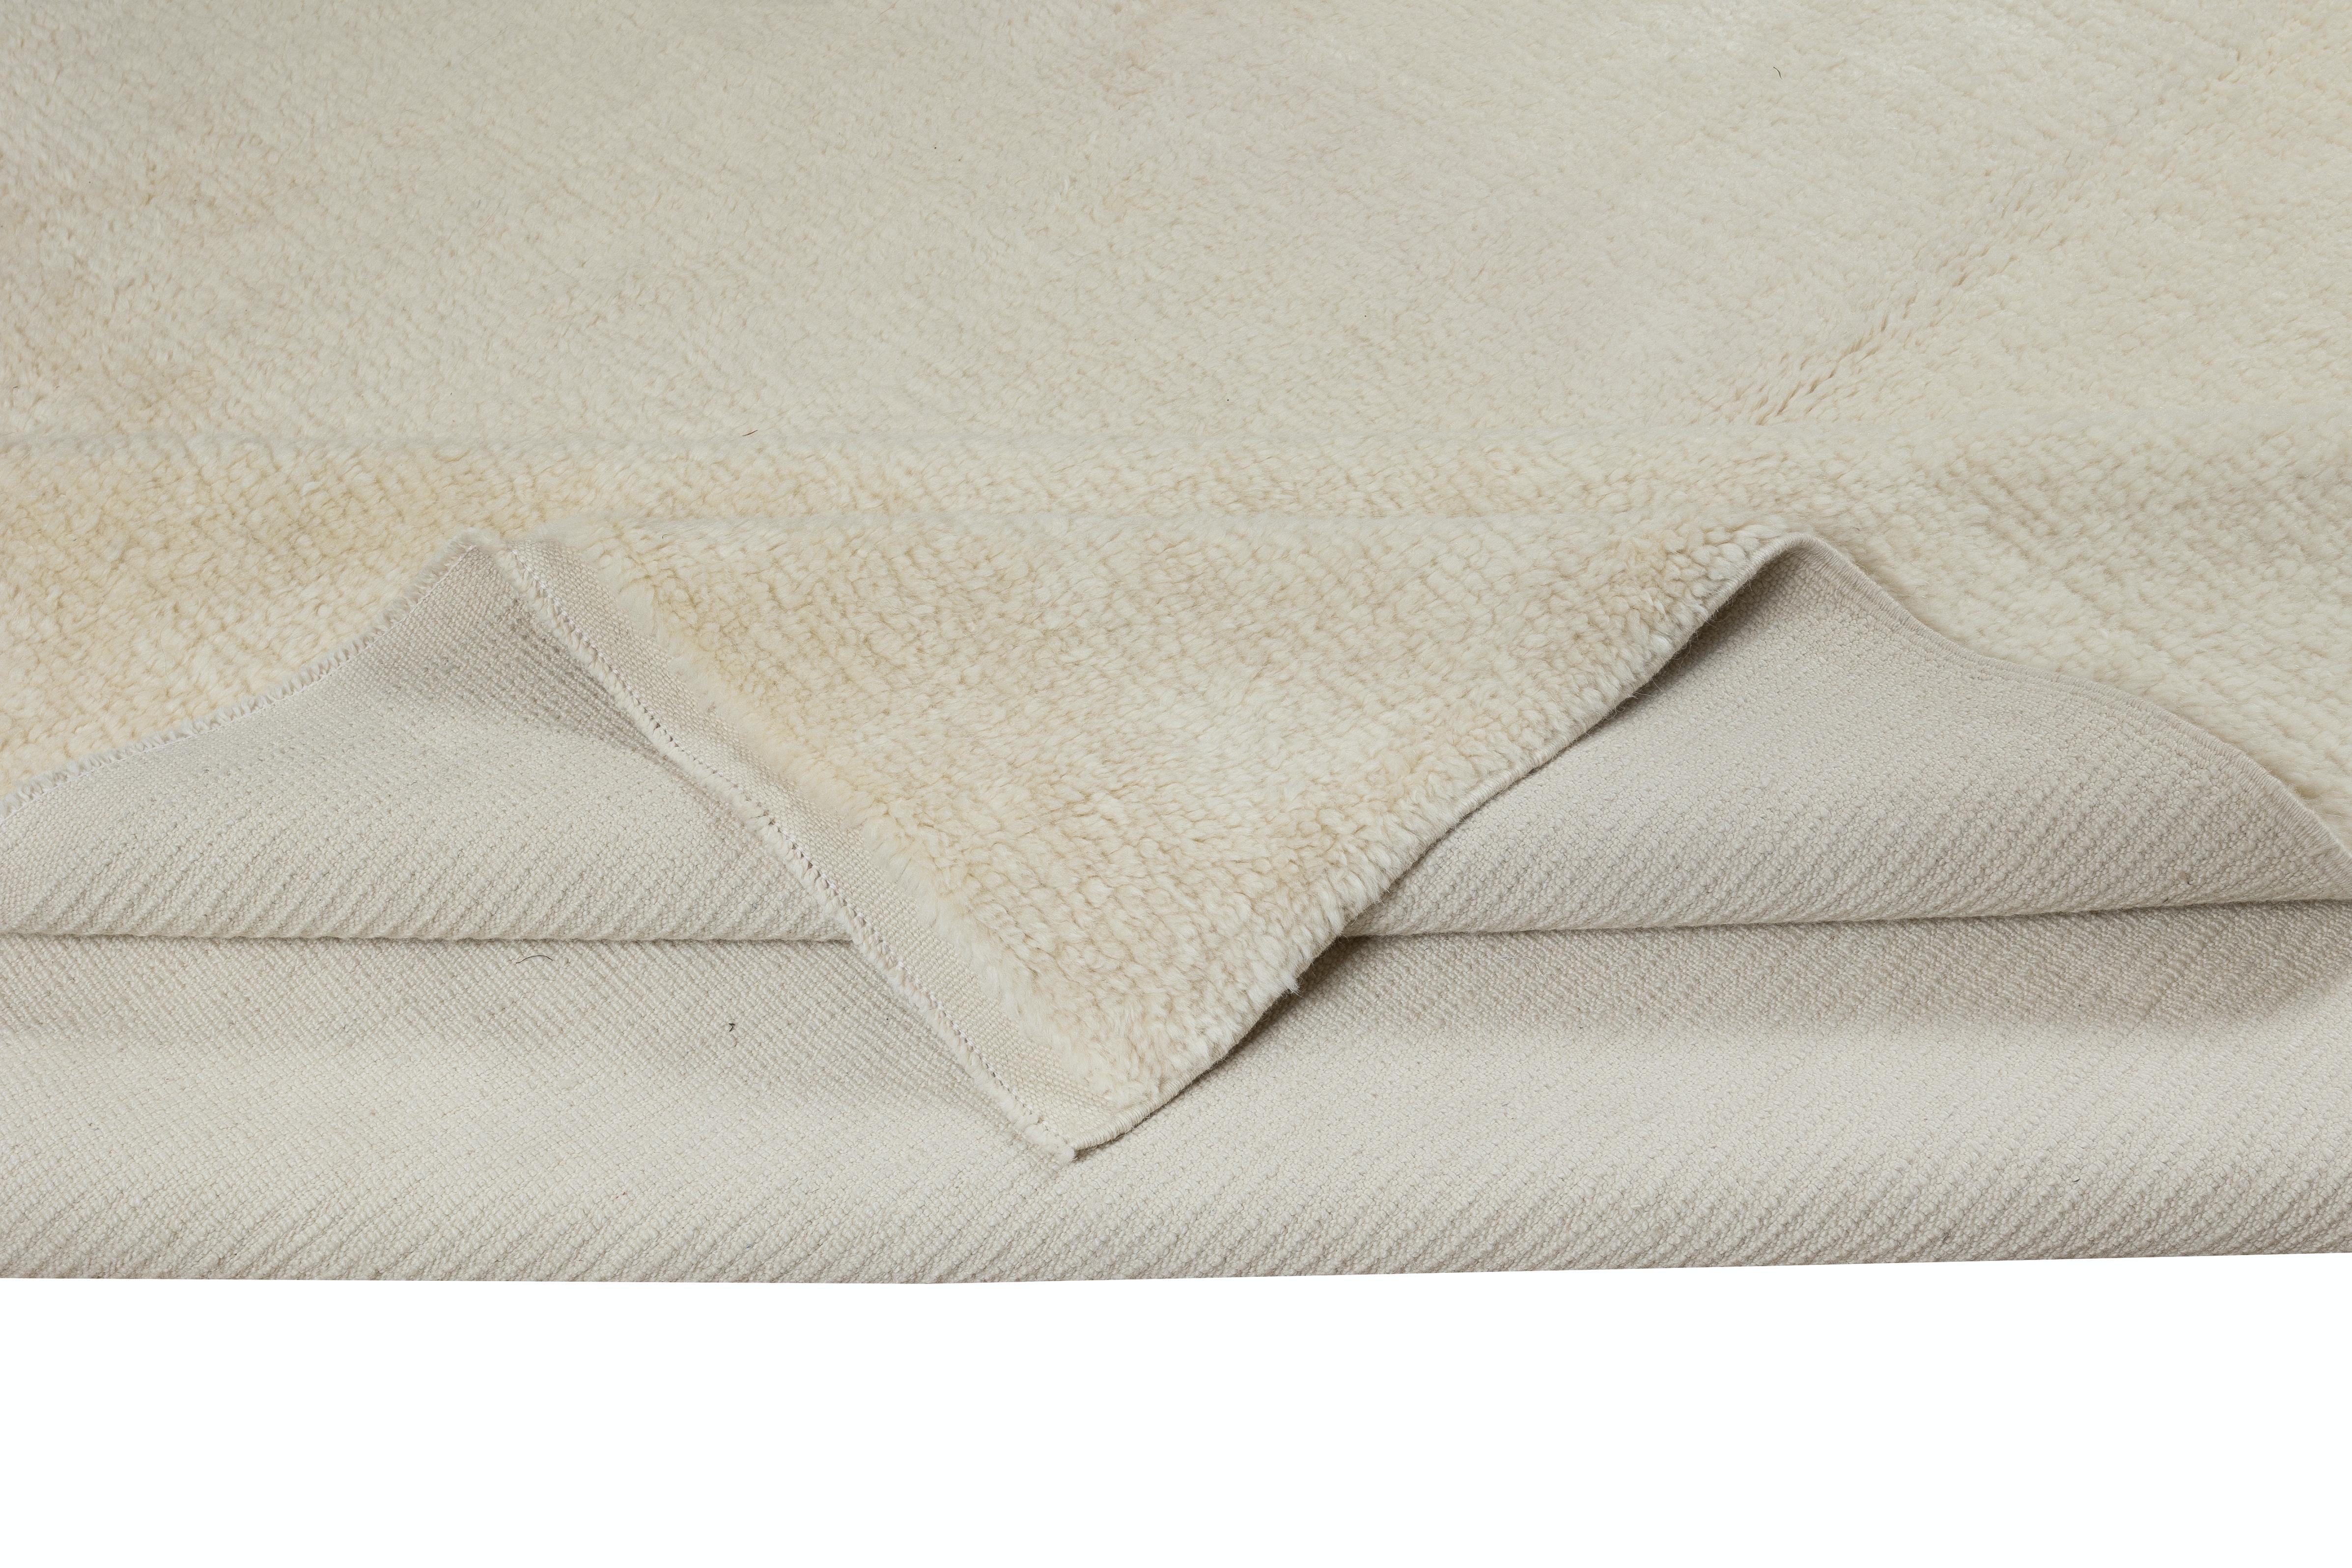 Erhöhen Sie Ihren Wohnraum mit der schlichten Eleganz dieses neuen handgeknüpften, minimalistischen, einfarbig beigen türkischen Tulu-Teppichs, der fachmännisch aus luxuriöser Wolle gefertigt wurde. Dieser Teppich verkörpert die Essenz des modernen